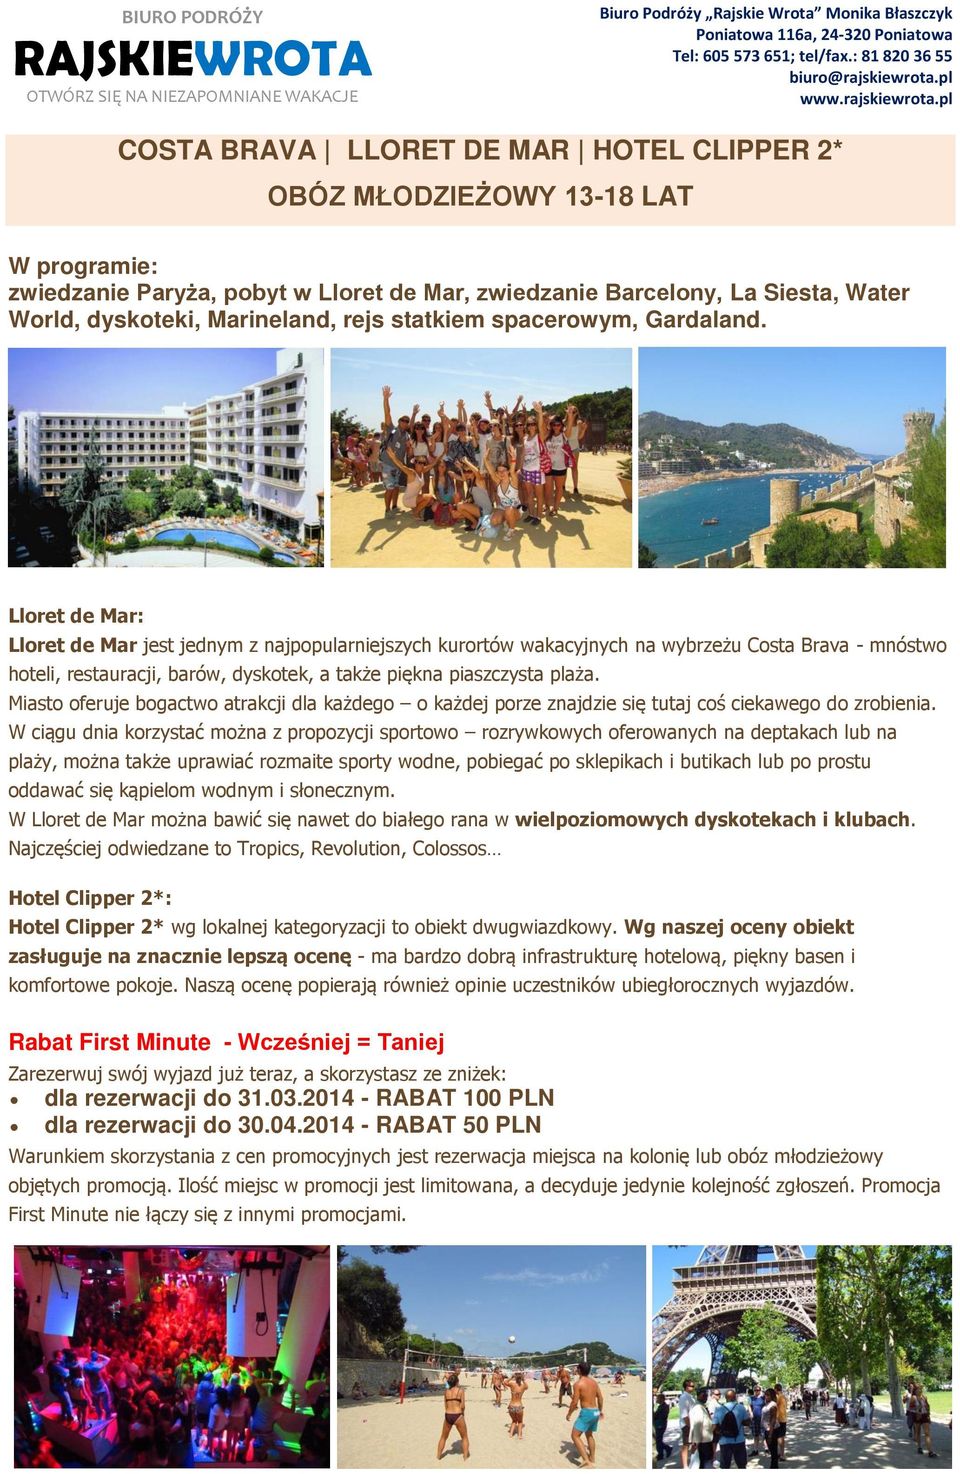 Lloret de Mar: Lloret de Mar jest jednym z najpopularniejszych kurortów wakacyjnych na wybrzeżu Costa Brava - mnóstwo hoteli, restauracji, barów, dyskotek, a także piękna piaszczysta plaża.